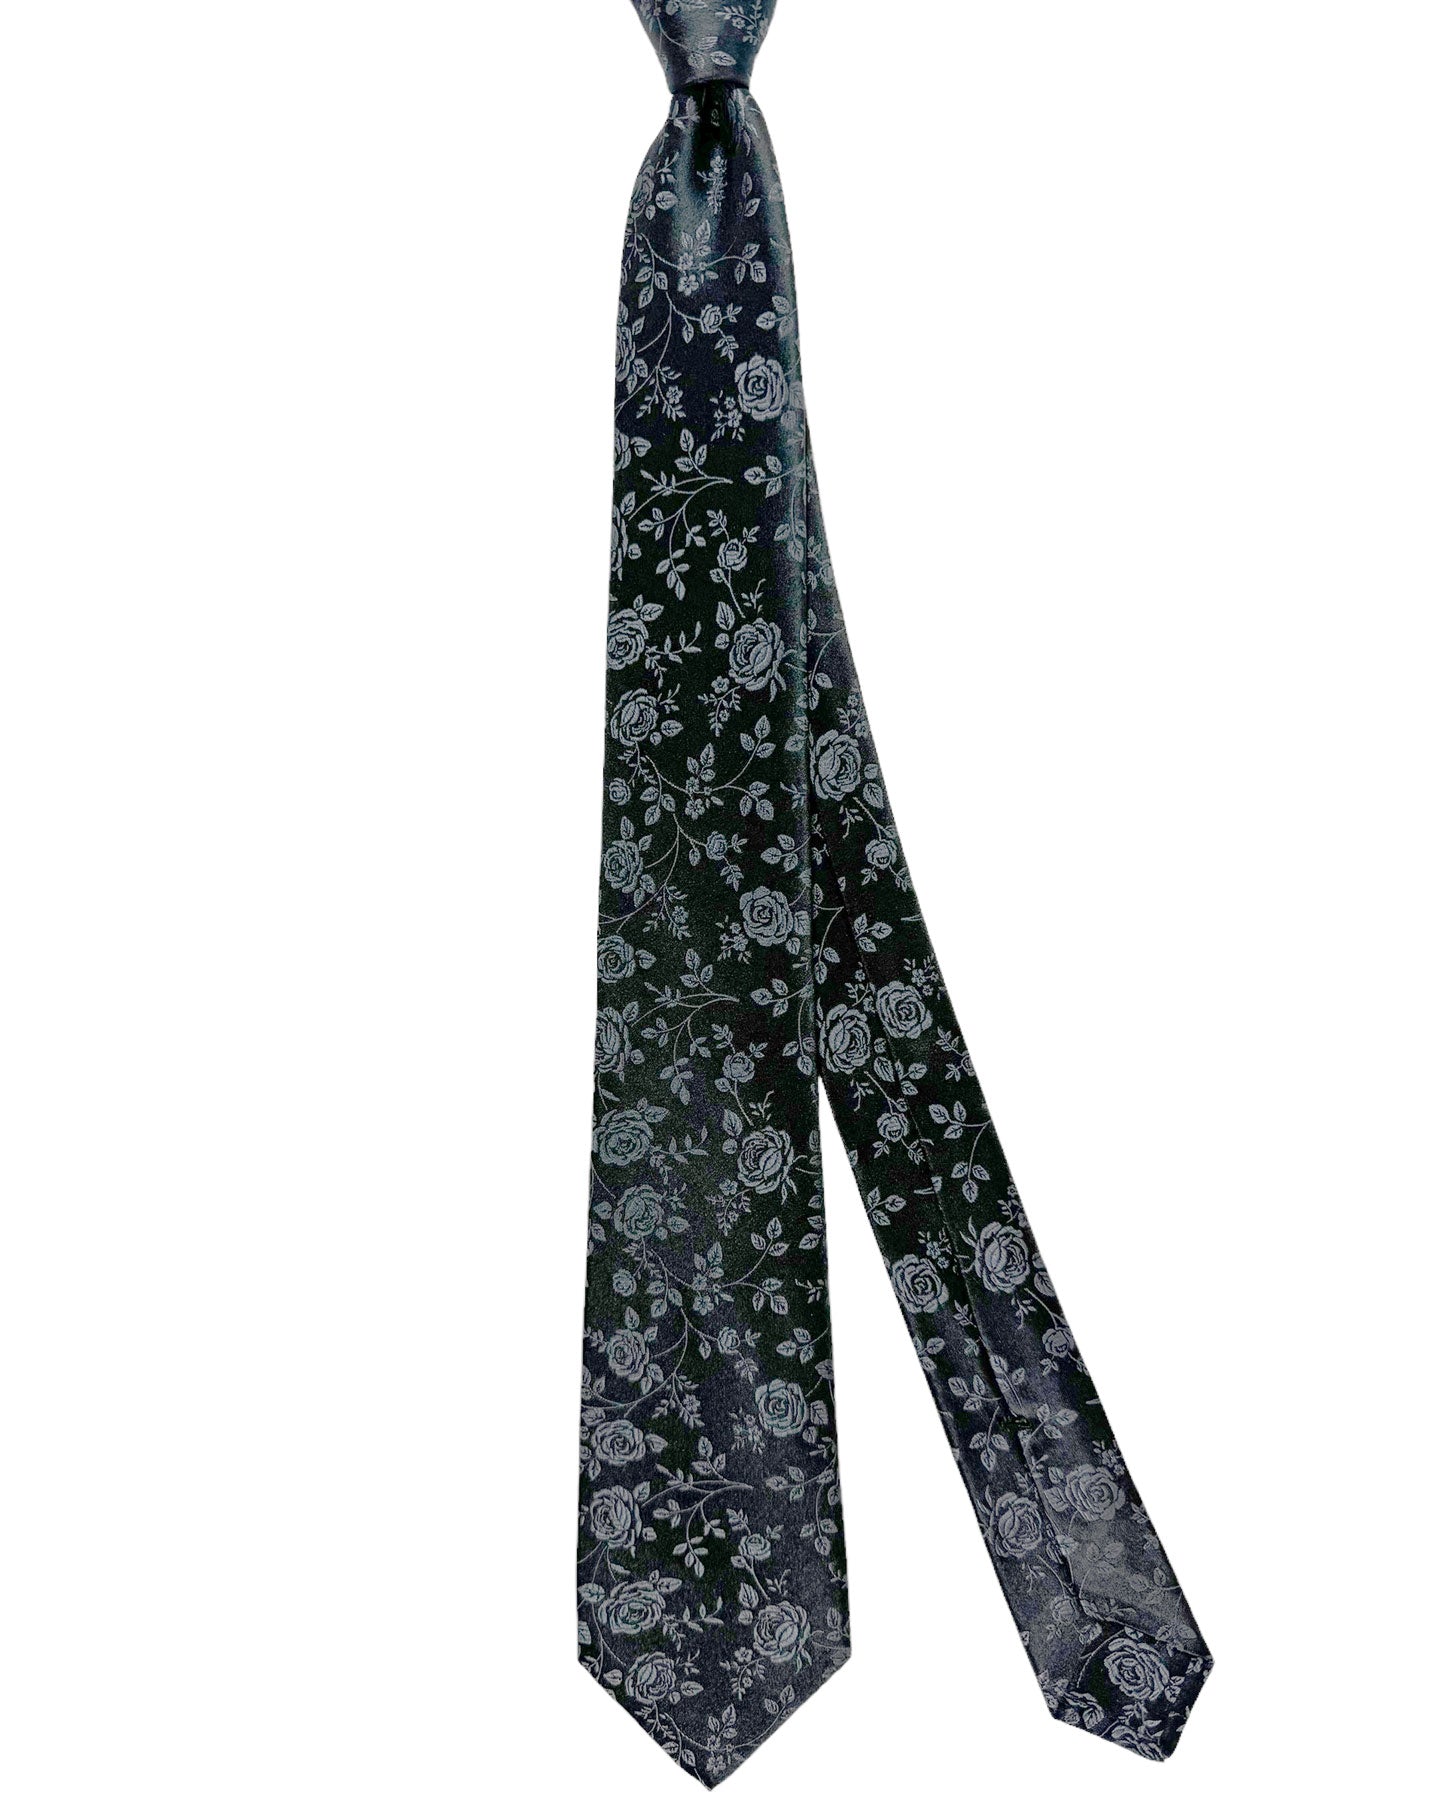 Kiton Silk Tie Black Gray Floral Design - Sevenfold Necktie